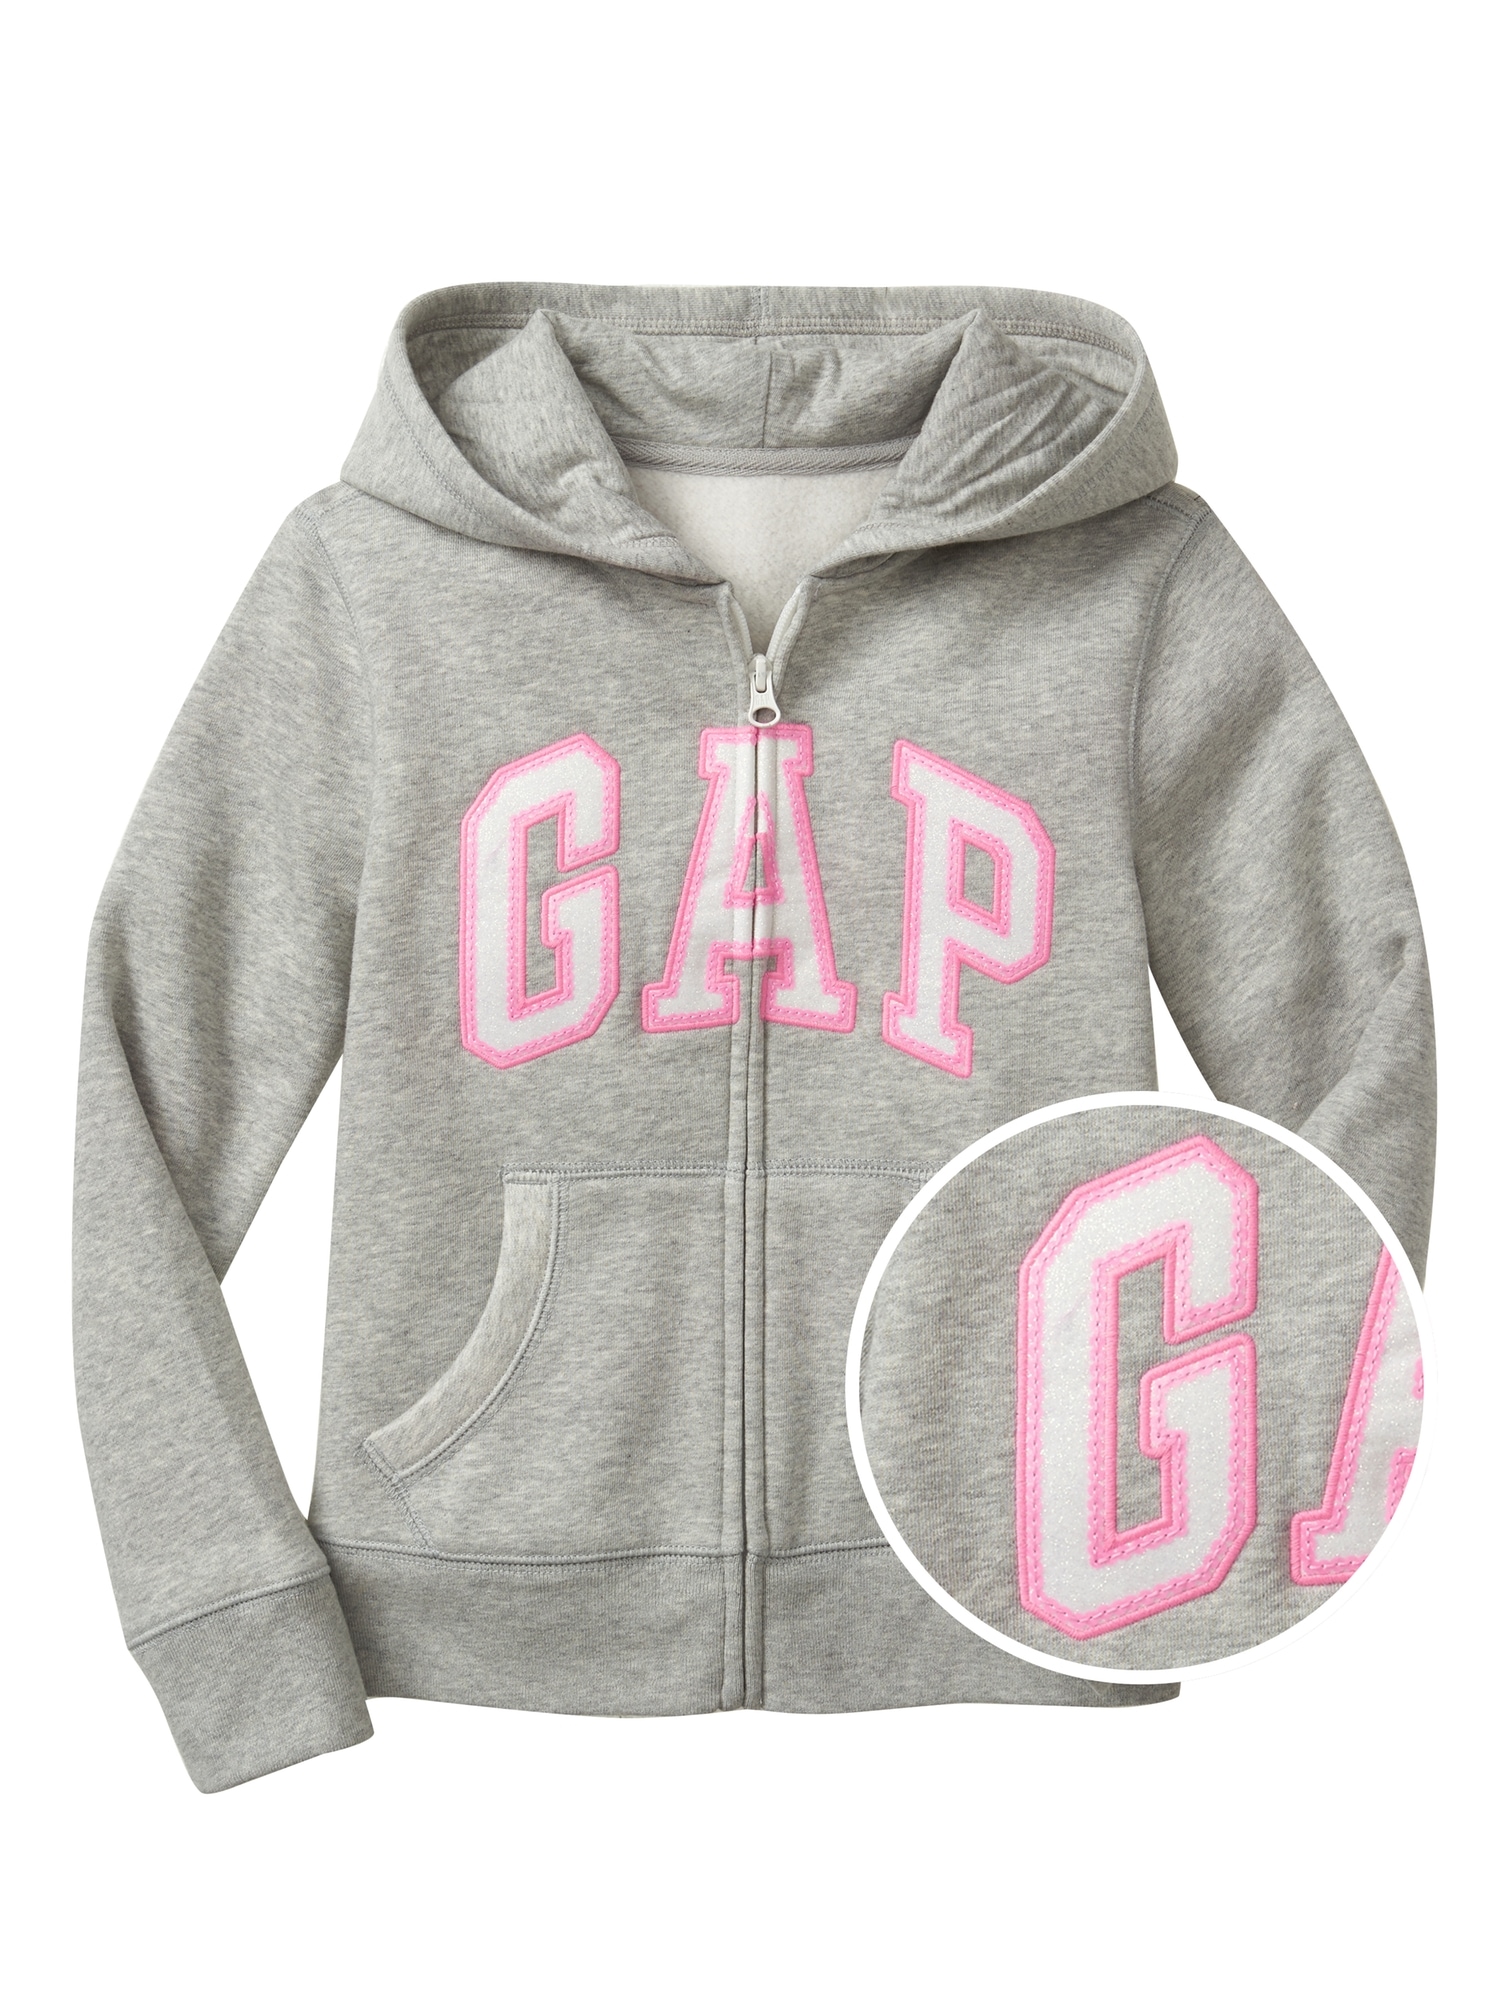 Kids Gap Logo Zip Hoodie In Fleece | Gap Factory